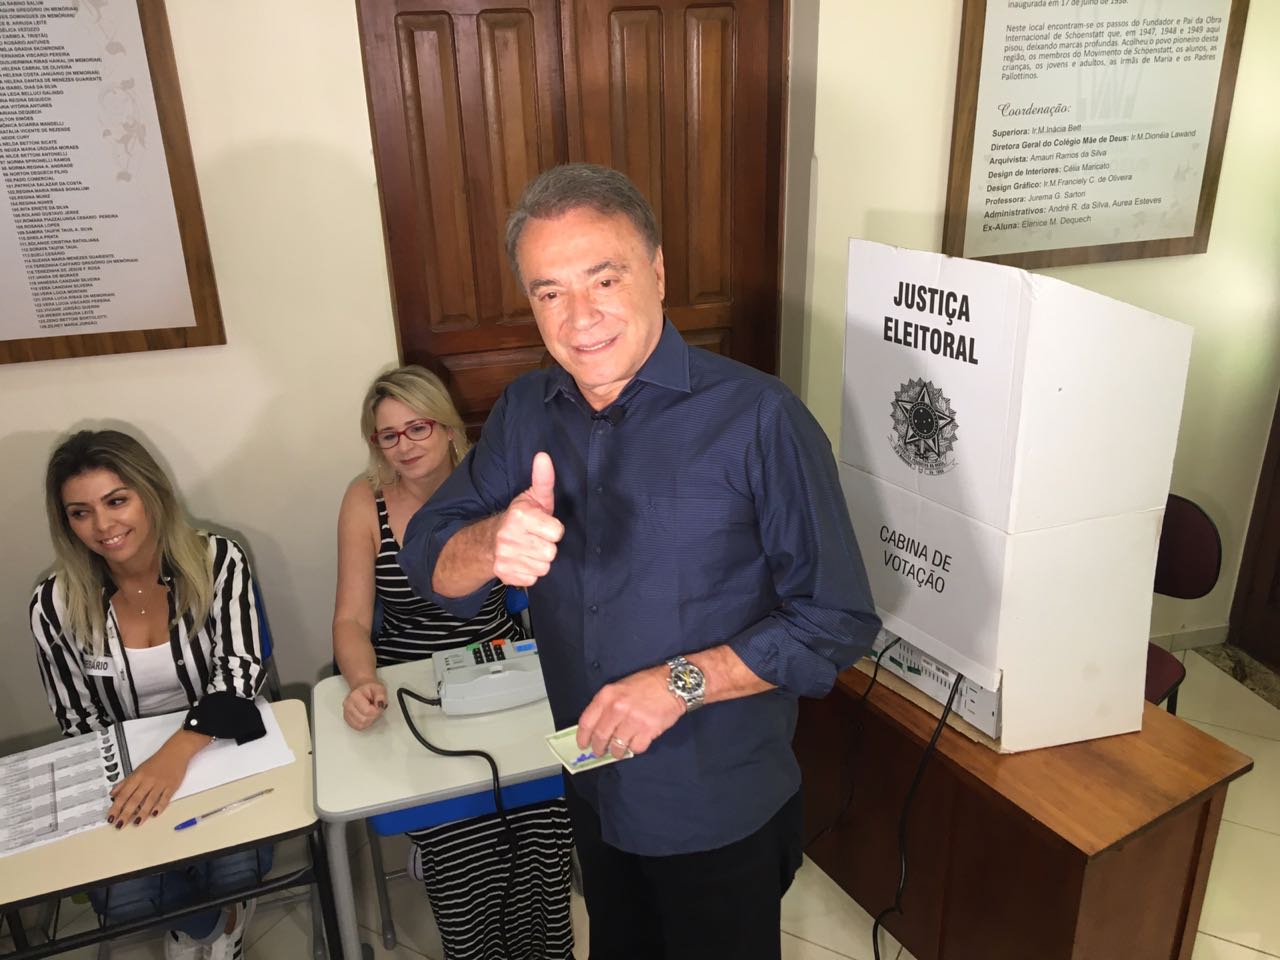  Candidato à presidência Alvaro Dias votou em Londrina